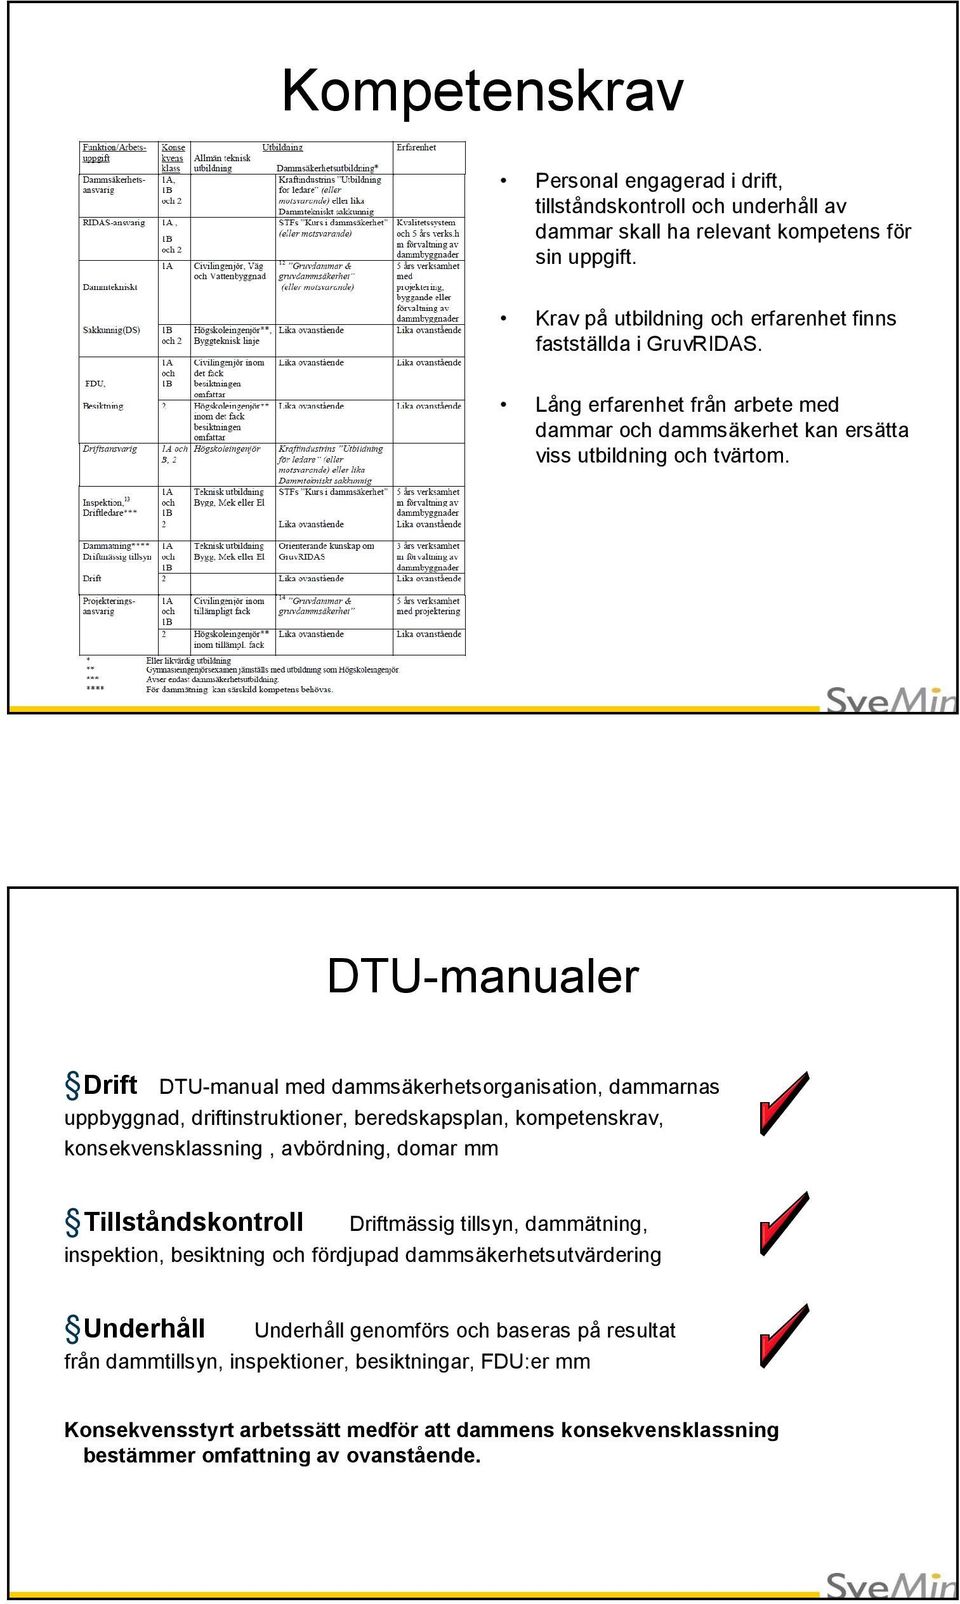 DTU-manualer Drift DTU-manual med dammsäkerhetsorganisation, dammarnas uppbyggnad, driftinstruktioner, beredskapsplan, kompetenskrav, konsekvensklassning, avbördning, domar mm Tillståndskontroll